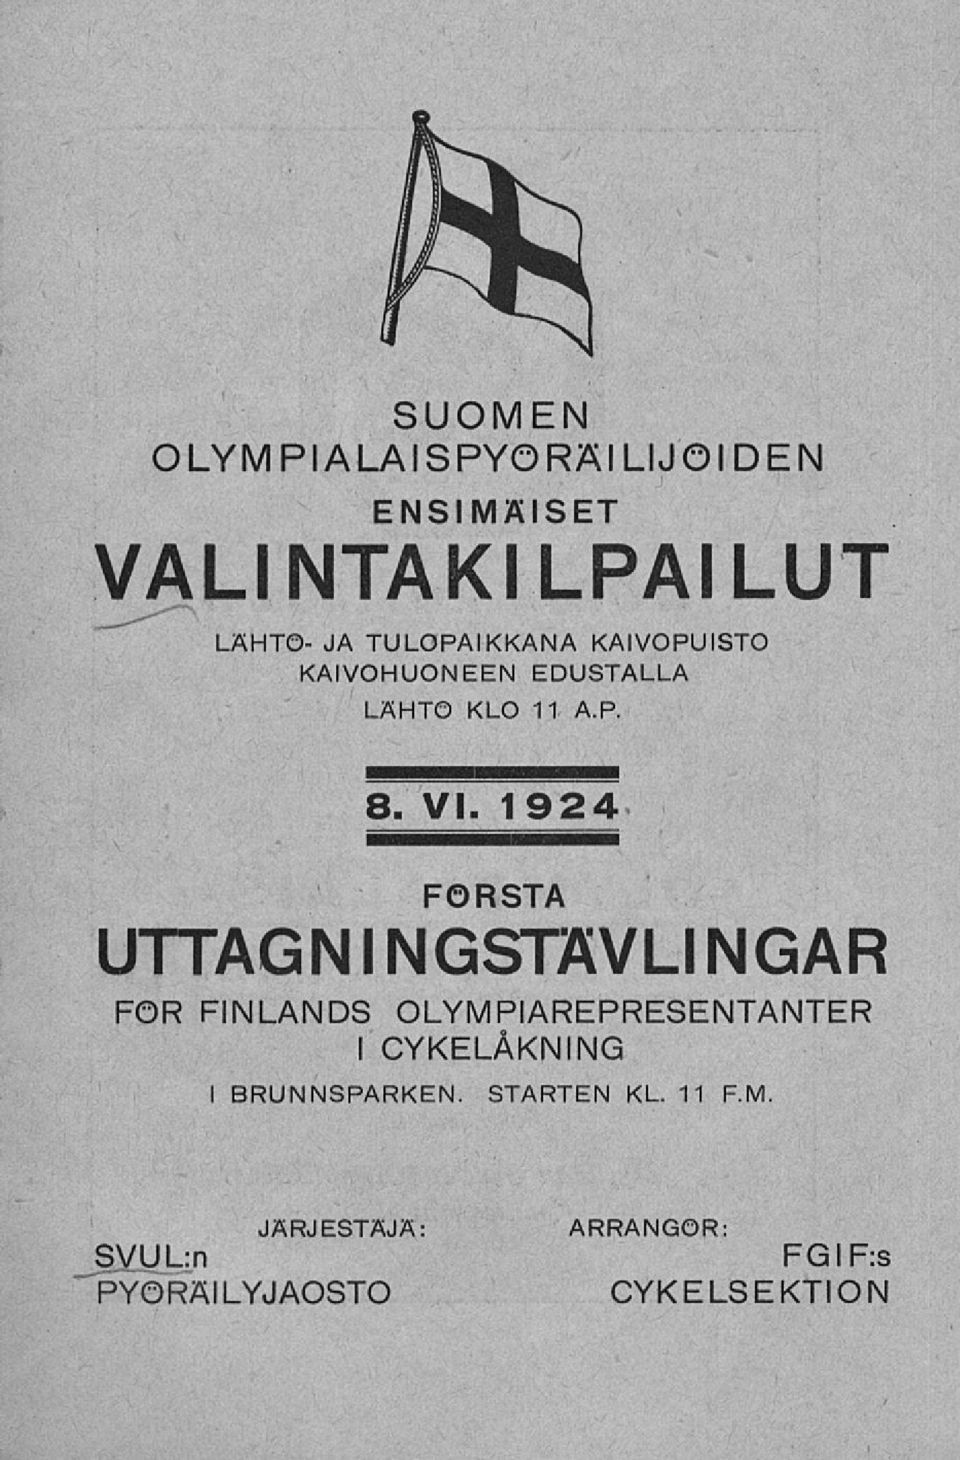 1924 FÖRSTA UTTAGNINGSTÄVLINGAR FOR FINLANDS I OLYMPIAREPRESENTANTER CYKELÅKNING